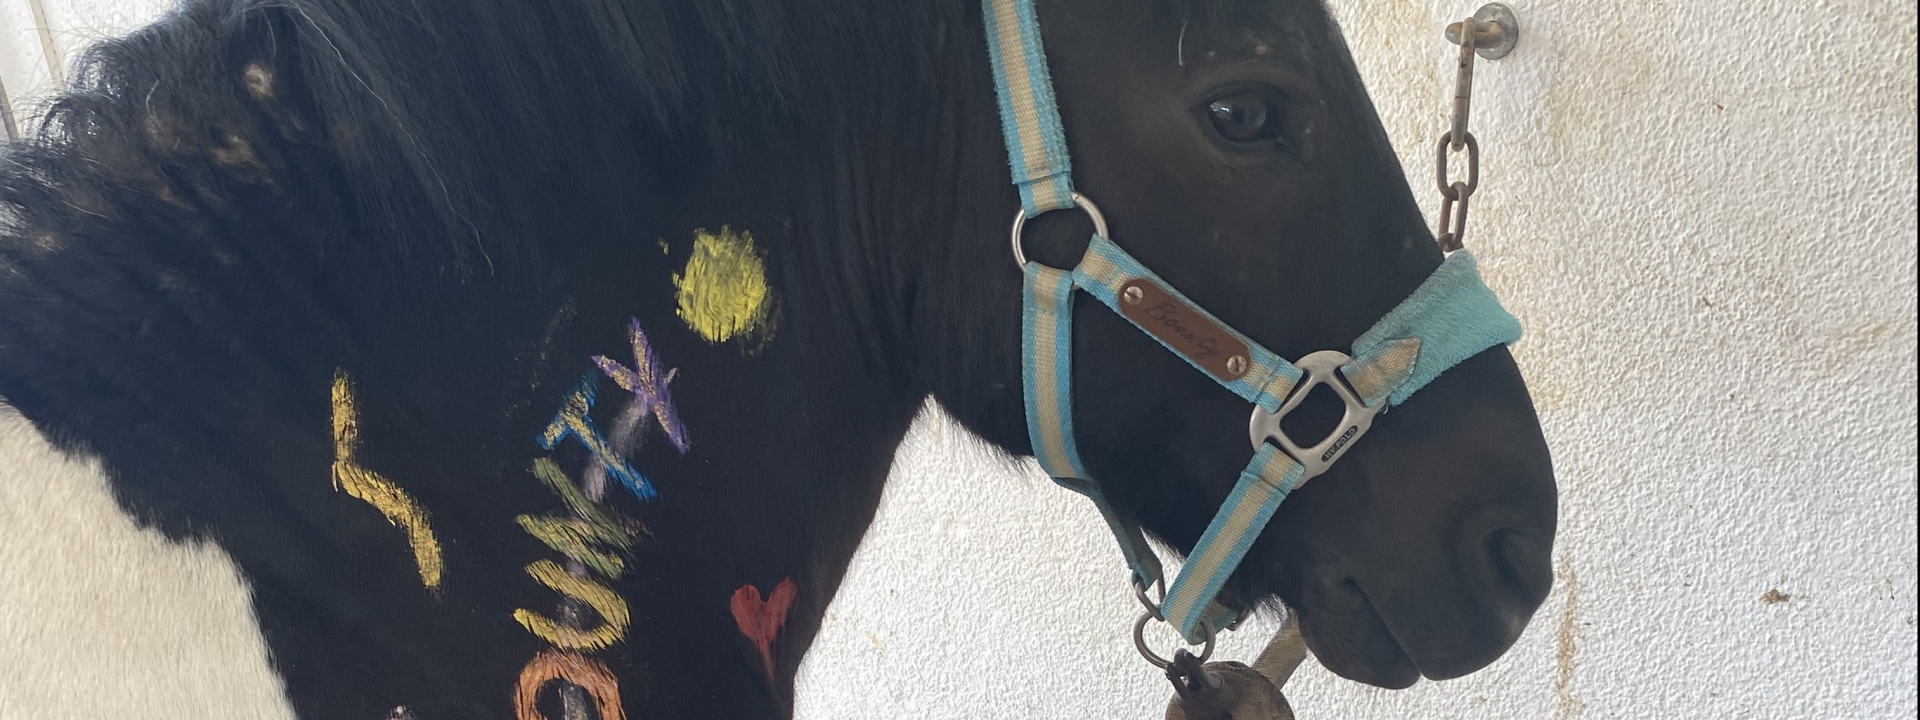 Foto: Ein Ponny, auf dessen Mähne mit fröhlich bunter Farbe "Bounty" geschrieben wurde